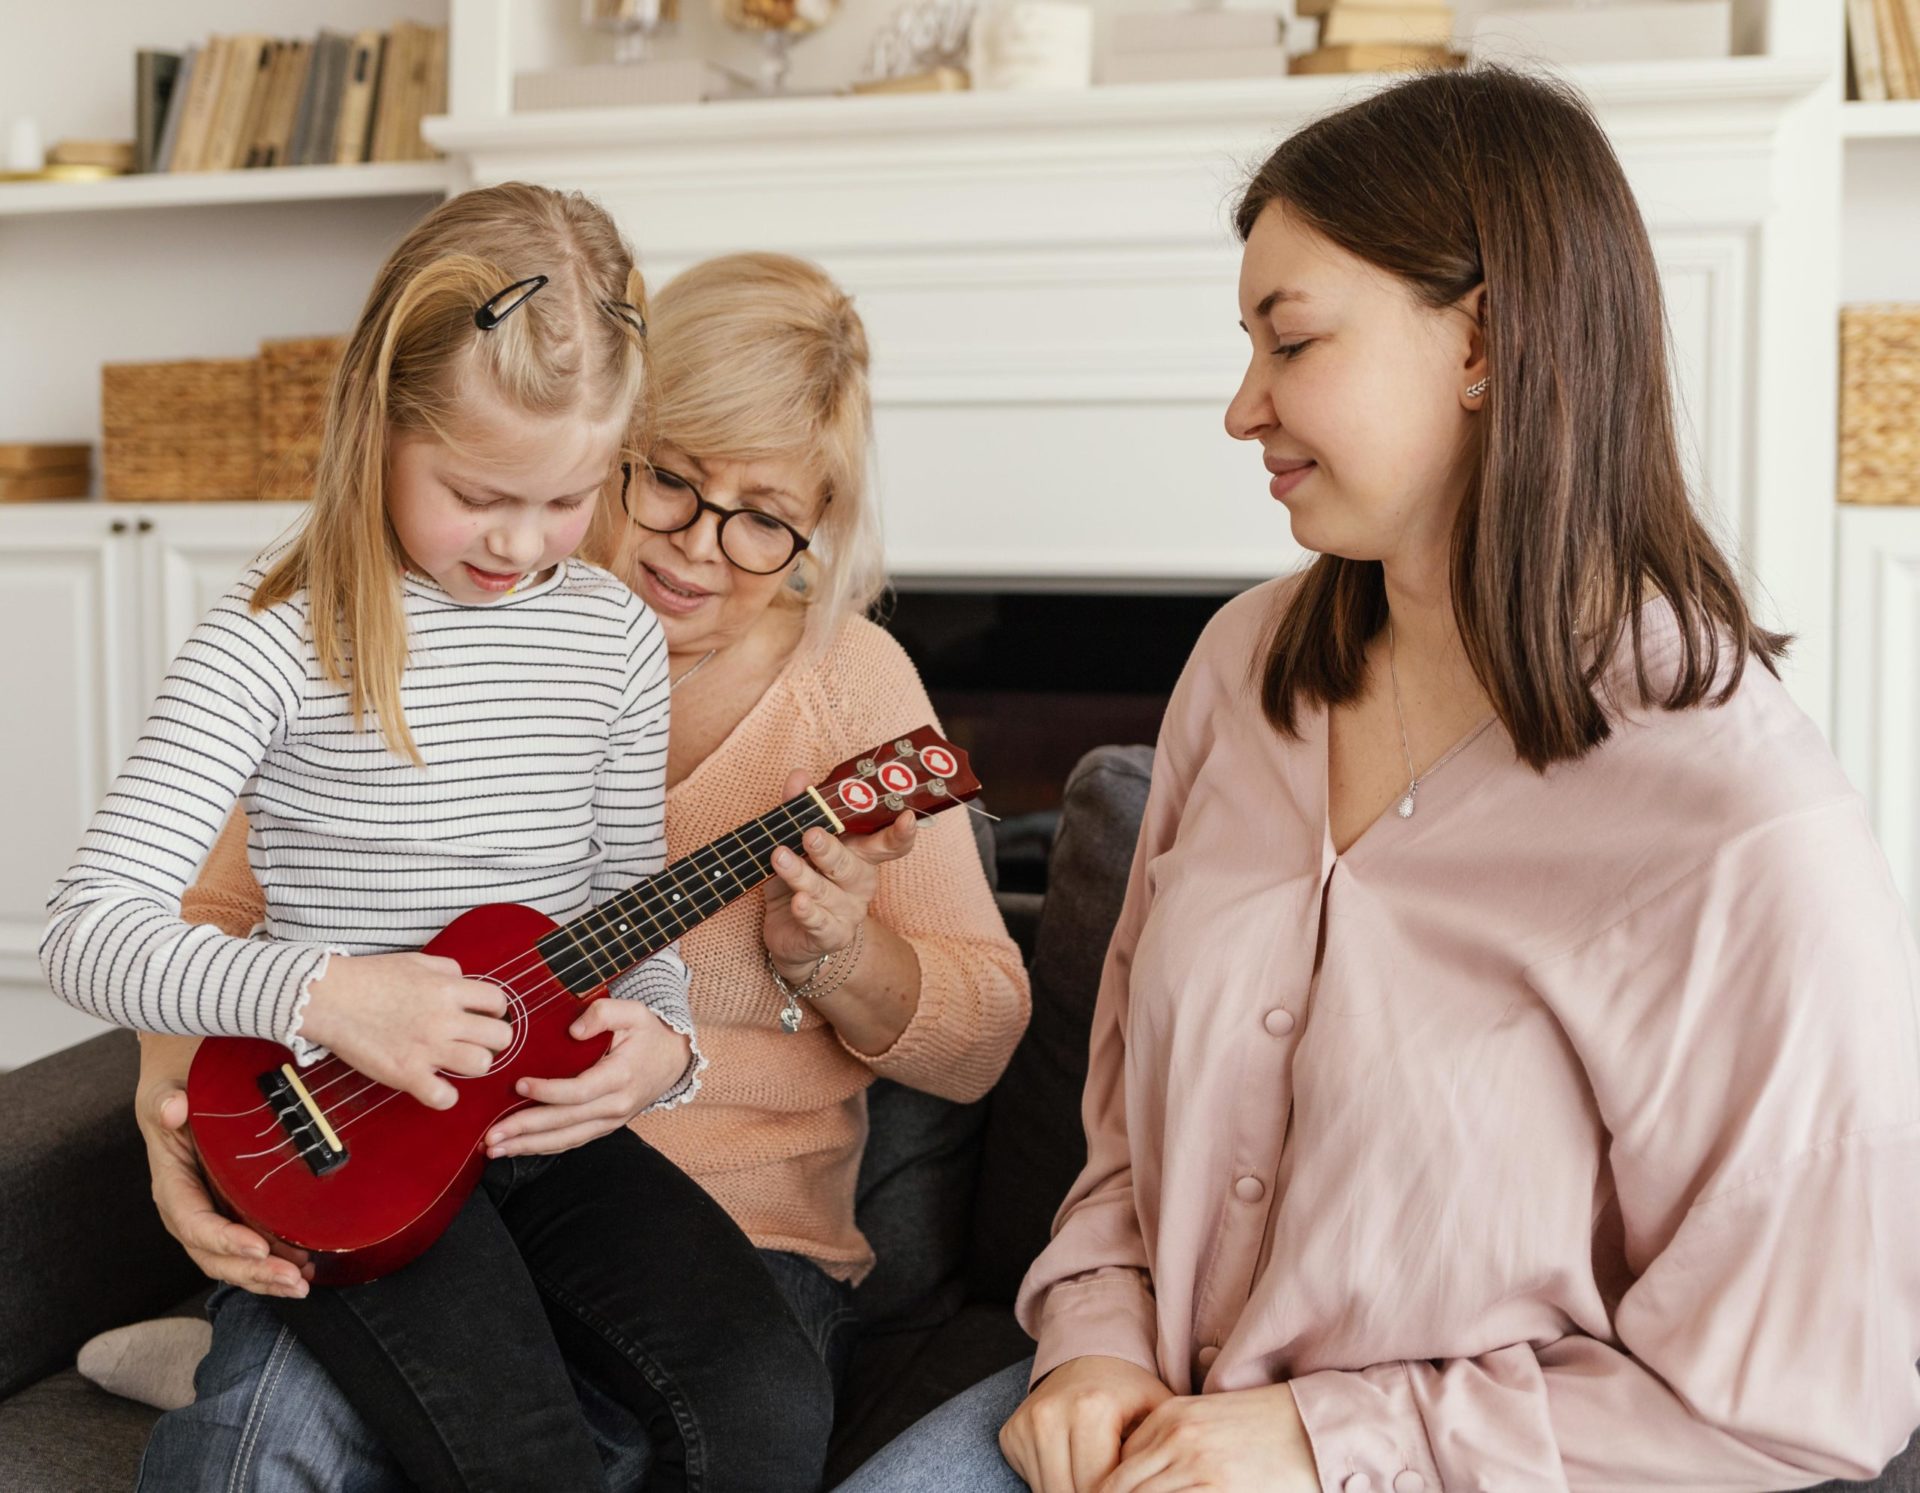 Ebeveynlerin en sık tercih ettiği müzik aletleri arasındaki gitarlar en ufak yaştaki çocuklar için dahi uygundur. Faydalı bir gitar kursu bulmak için ufak bir araştırma yapmanız gerekebilir. Gitara başlamak için alt sınır yaşının ise 4 ile 5 olduğu bilinmektedir. Ancak bu aralık 8 ile 9 yaşına kadar ilerleyebilir. Bu yaş sınırlarının sembolik rakamlar ve alt sınır olduğu ise unutulmamalıdır. Doğru enstrüman seçimi ve eğitim ile beraber her çocuk başarılı olabilir. Gitar Kursu,Kurs,Piyano,Gitar,Eğitim Çocuğunuz için En Doğru Müzik Aleti Hangisidir?